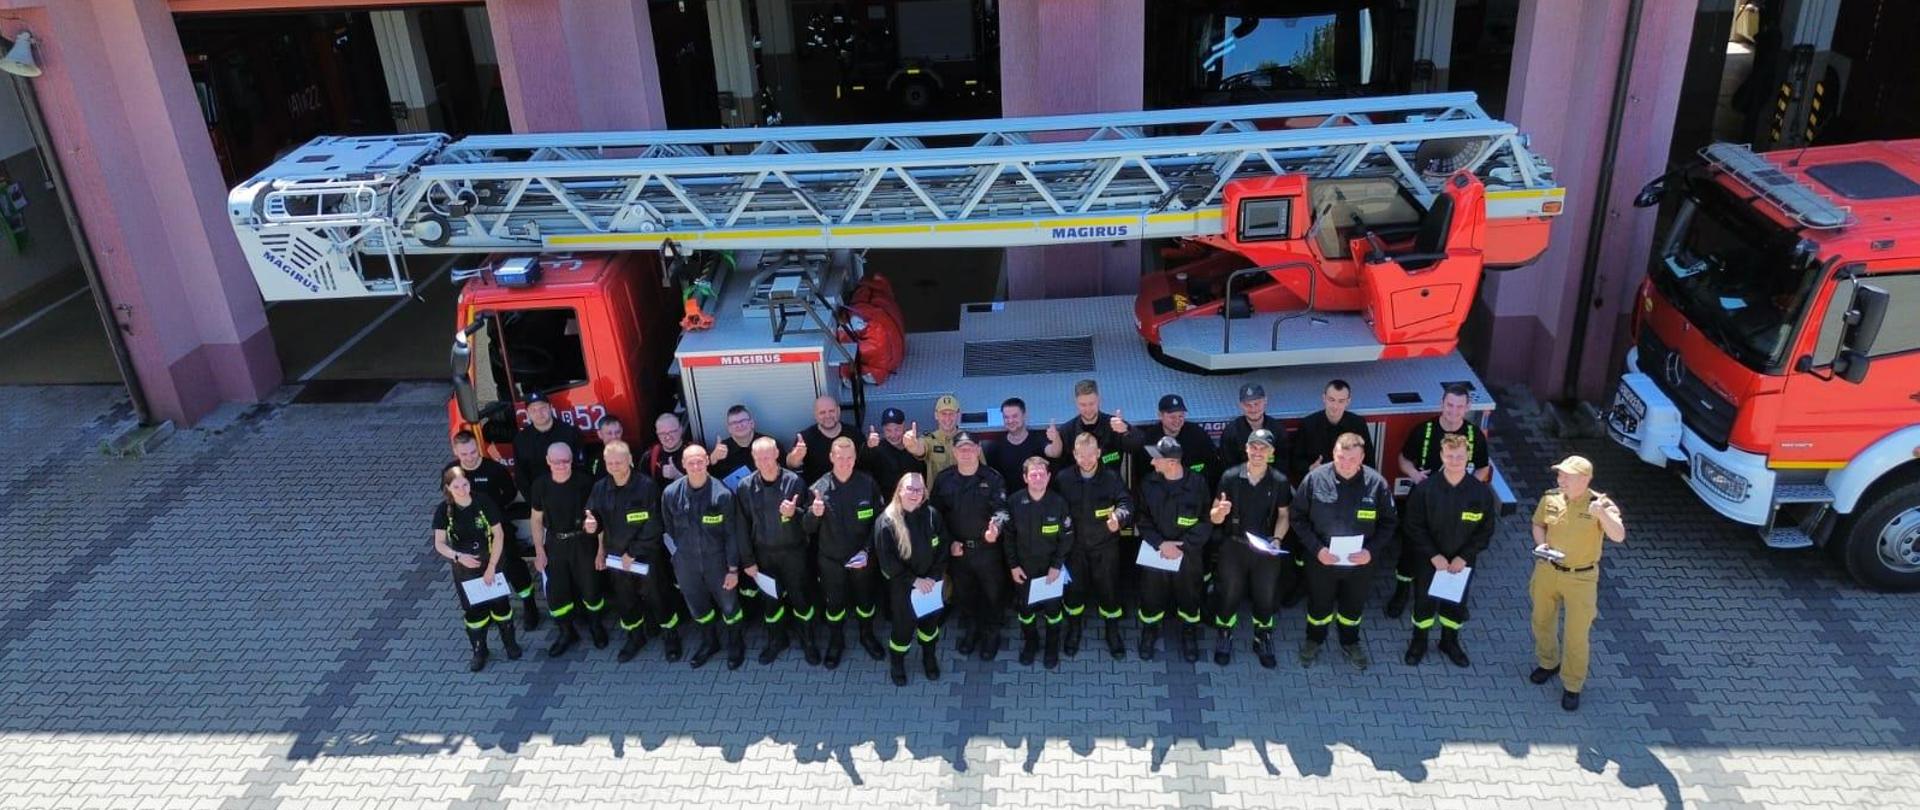 Na zdjęciu widać młodych strażaków strojących przed drabiną mechaniczną